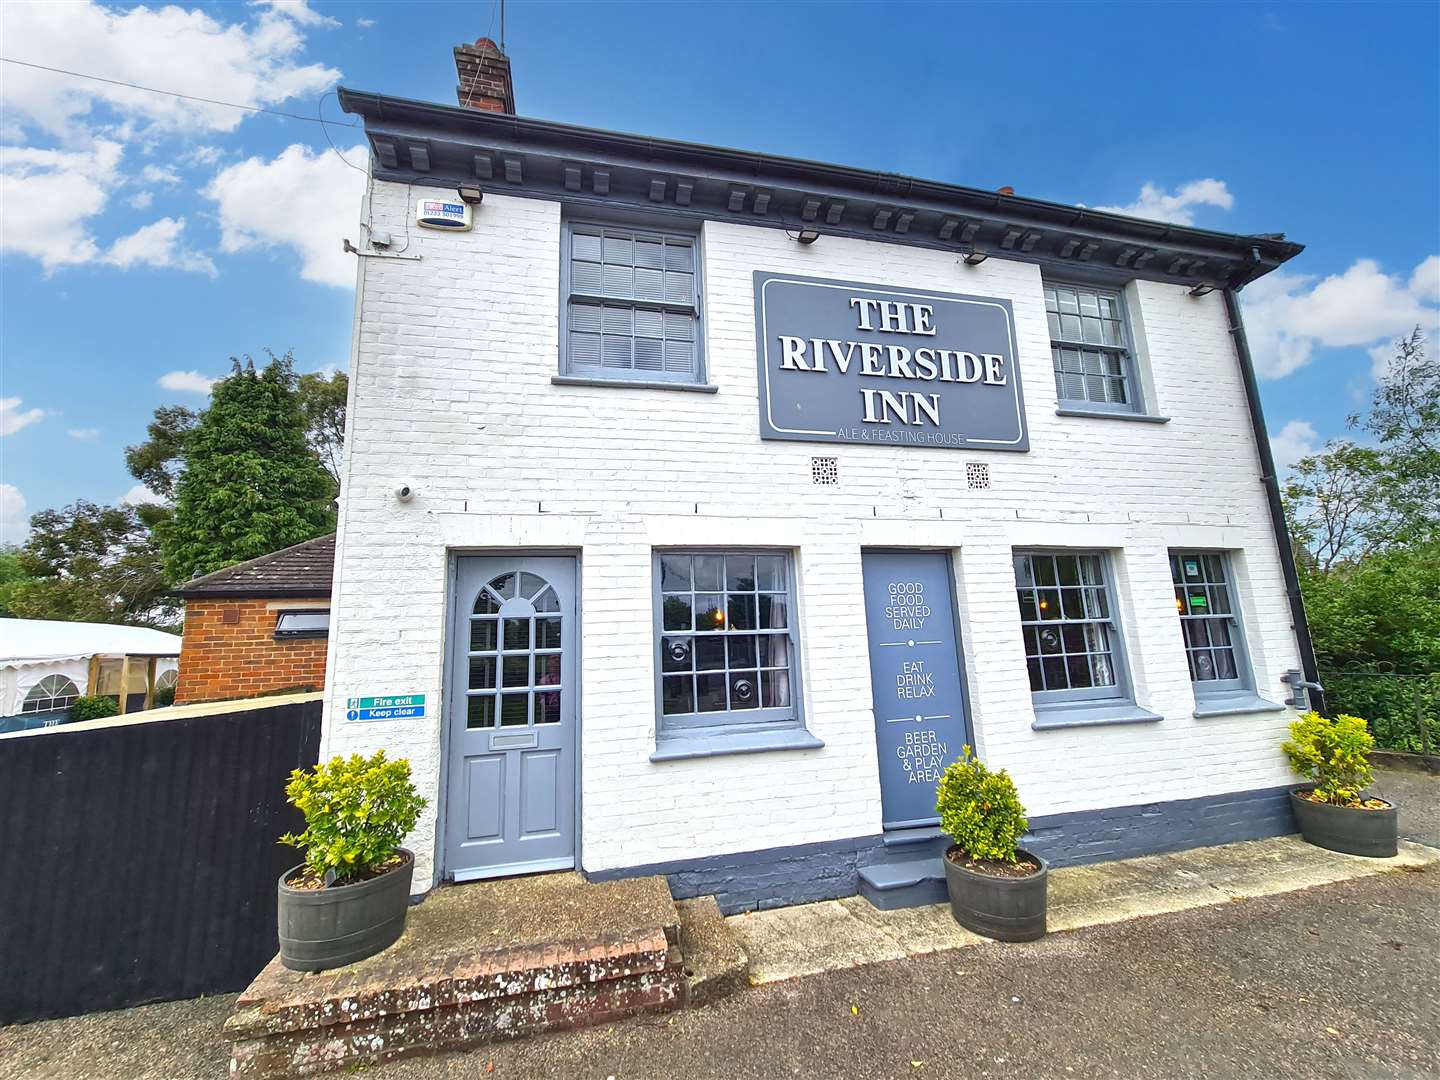 The Riverside Inn, Ashford, se está poniendo en el mercado ya que los propietarios planean mudarse a España